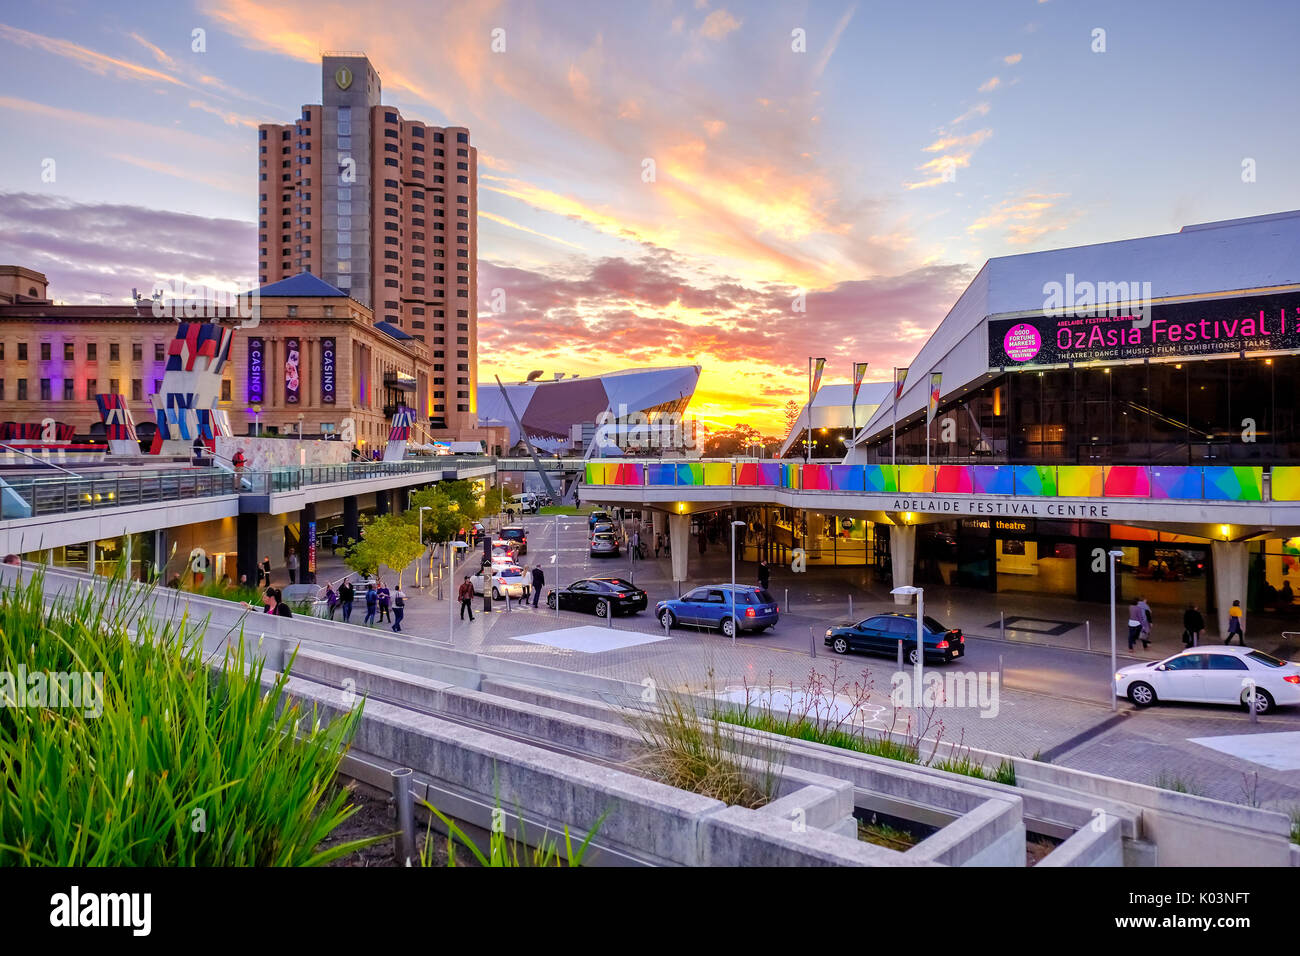 Adelaide, Australien - 16. September 2016: Adelaide Festival Centre mit Intercontinental Hotel Szene in Richtung Westen von der King William Street gesehen bei s Stockfoto